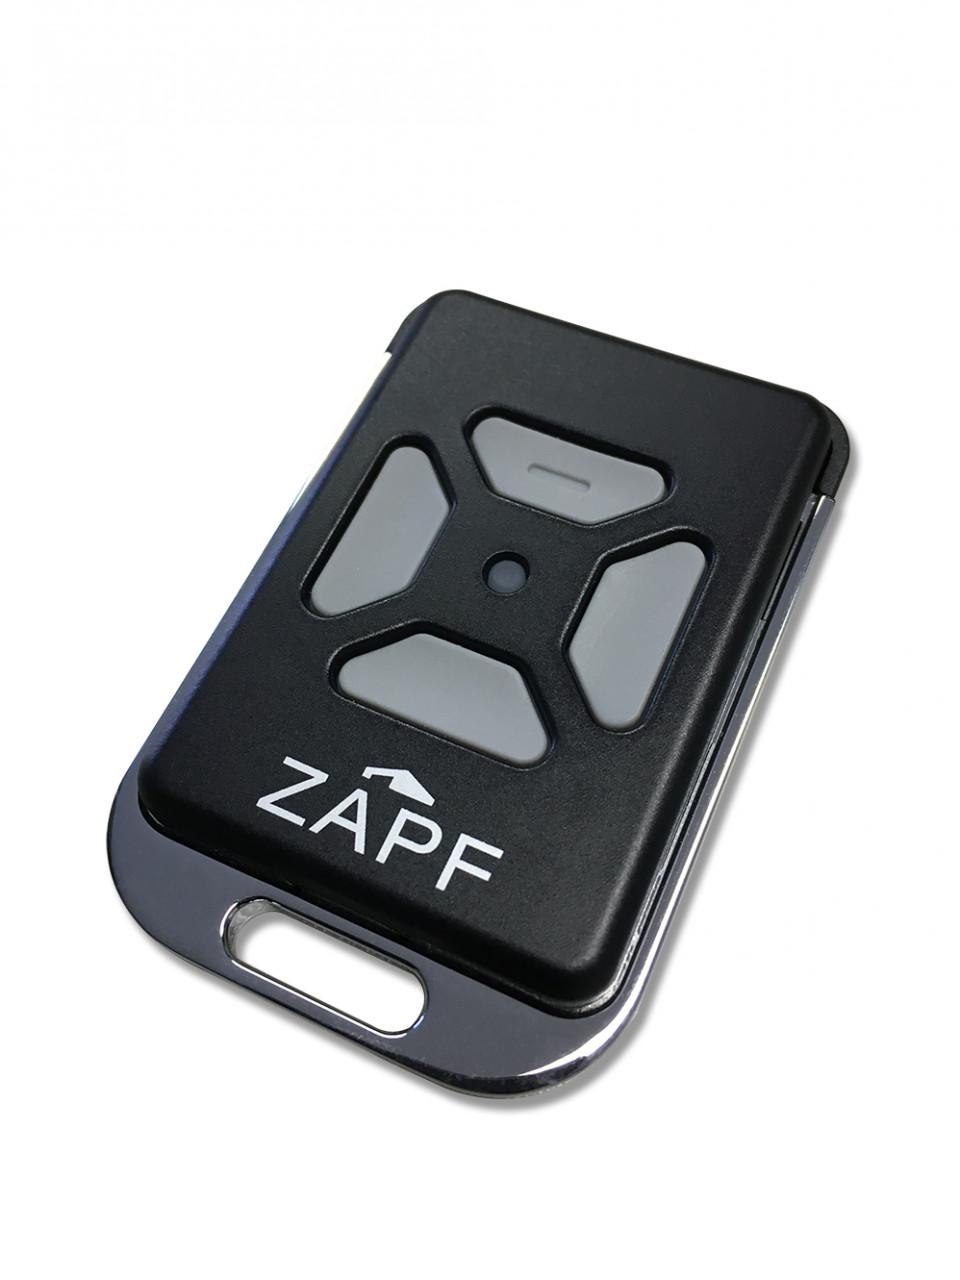 ZAPF Handsender Impulse 868 MHz bi-linked